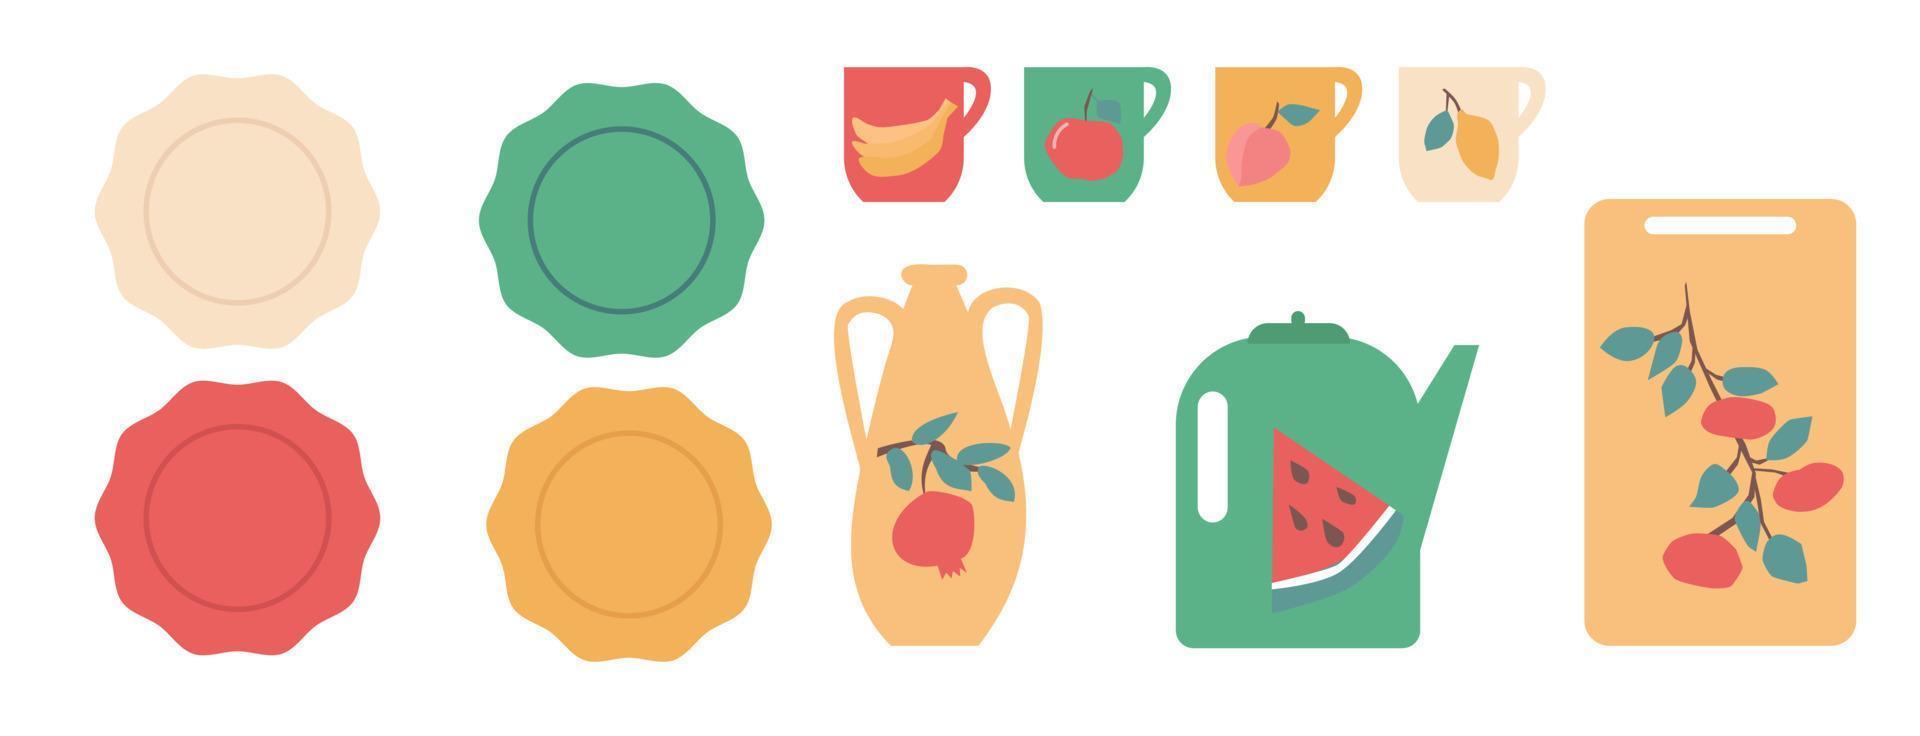 articoli da cucina colorati decorati con set di frutta illustrazione vettoriale. vettore